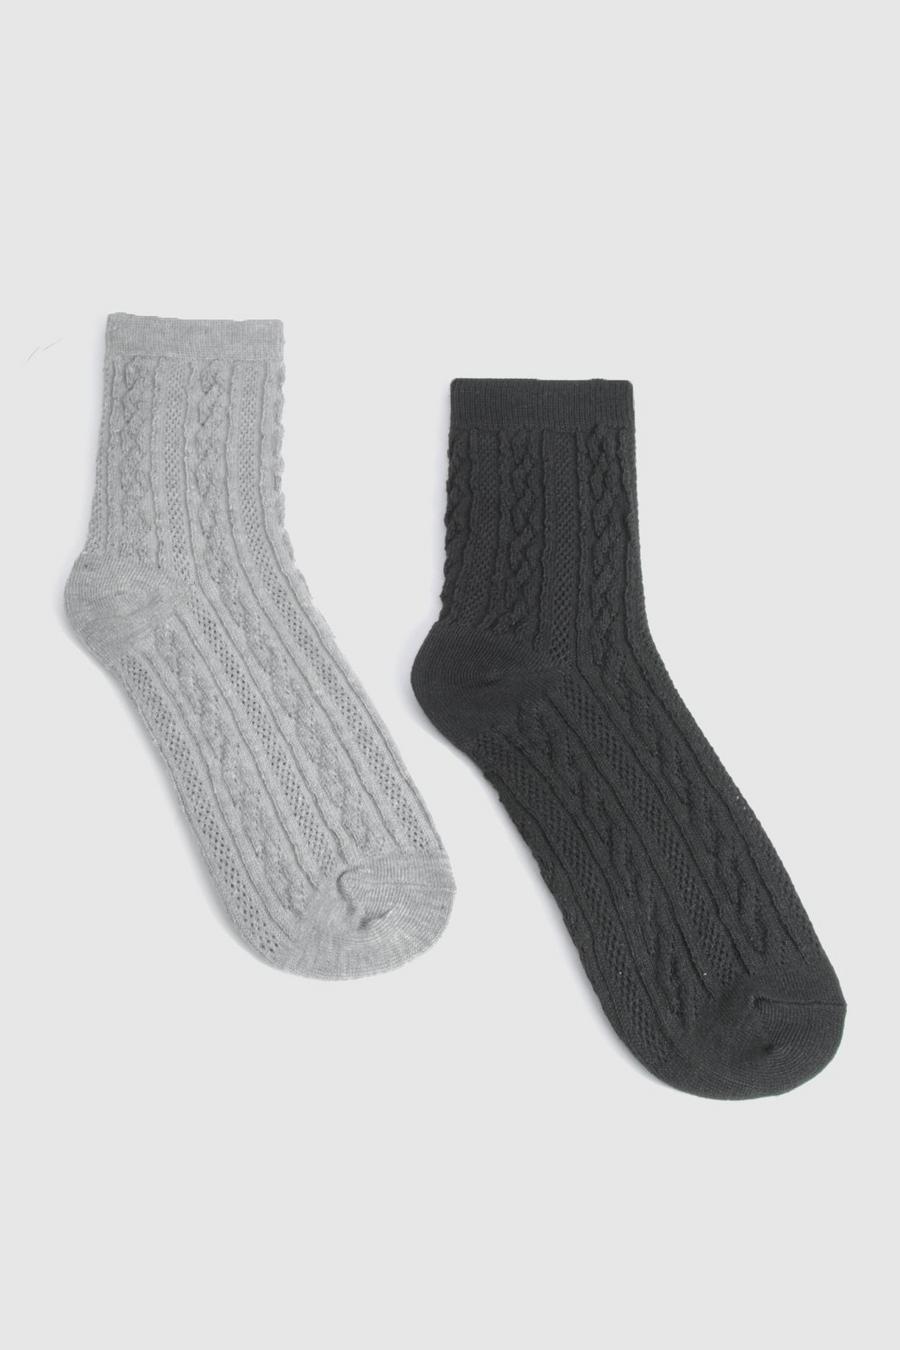 2er-Pack Zopfmuster Loungewear-Socken in schwarz und grau, Multi